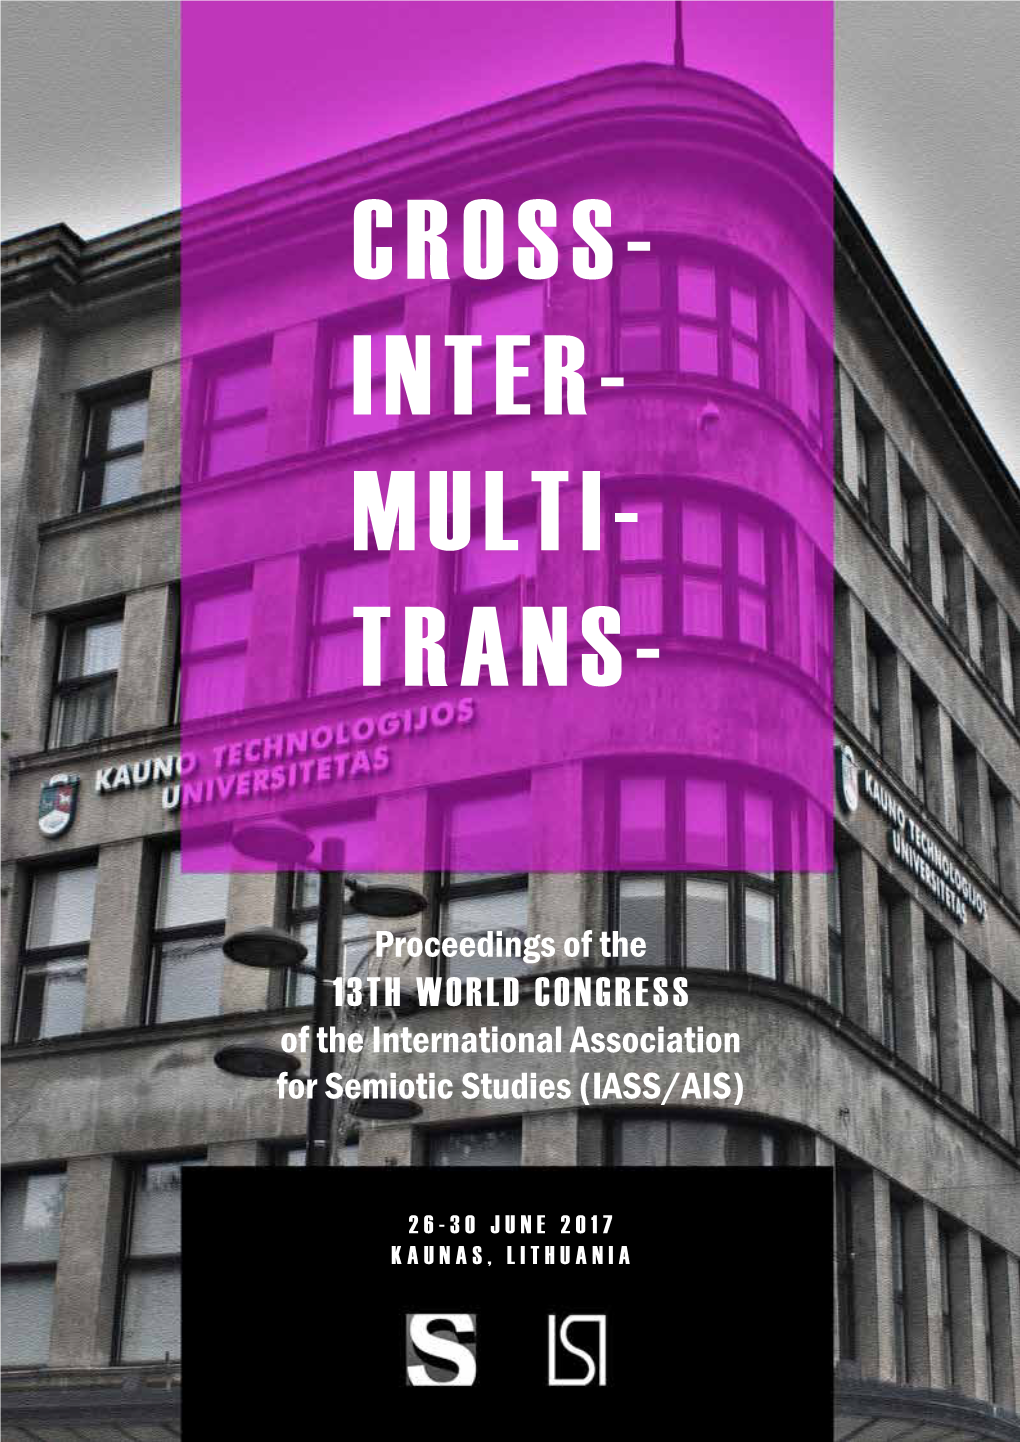 Cross- Inter- Multi- Trans